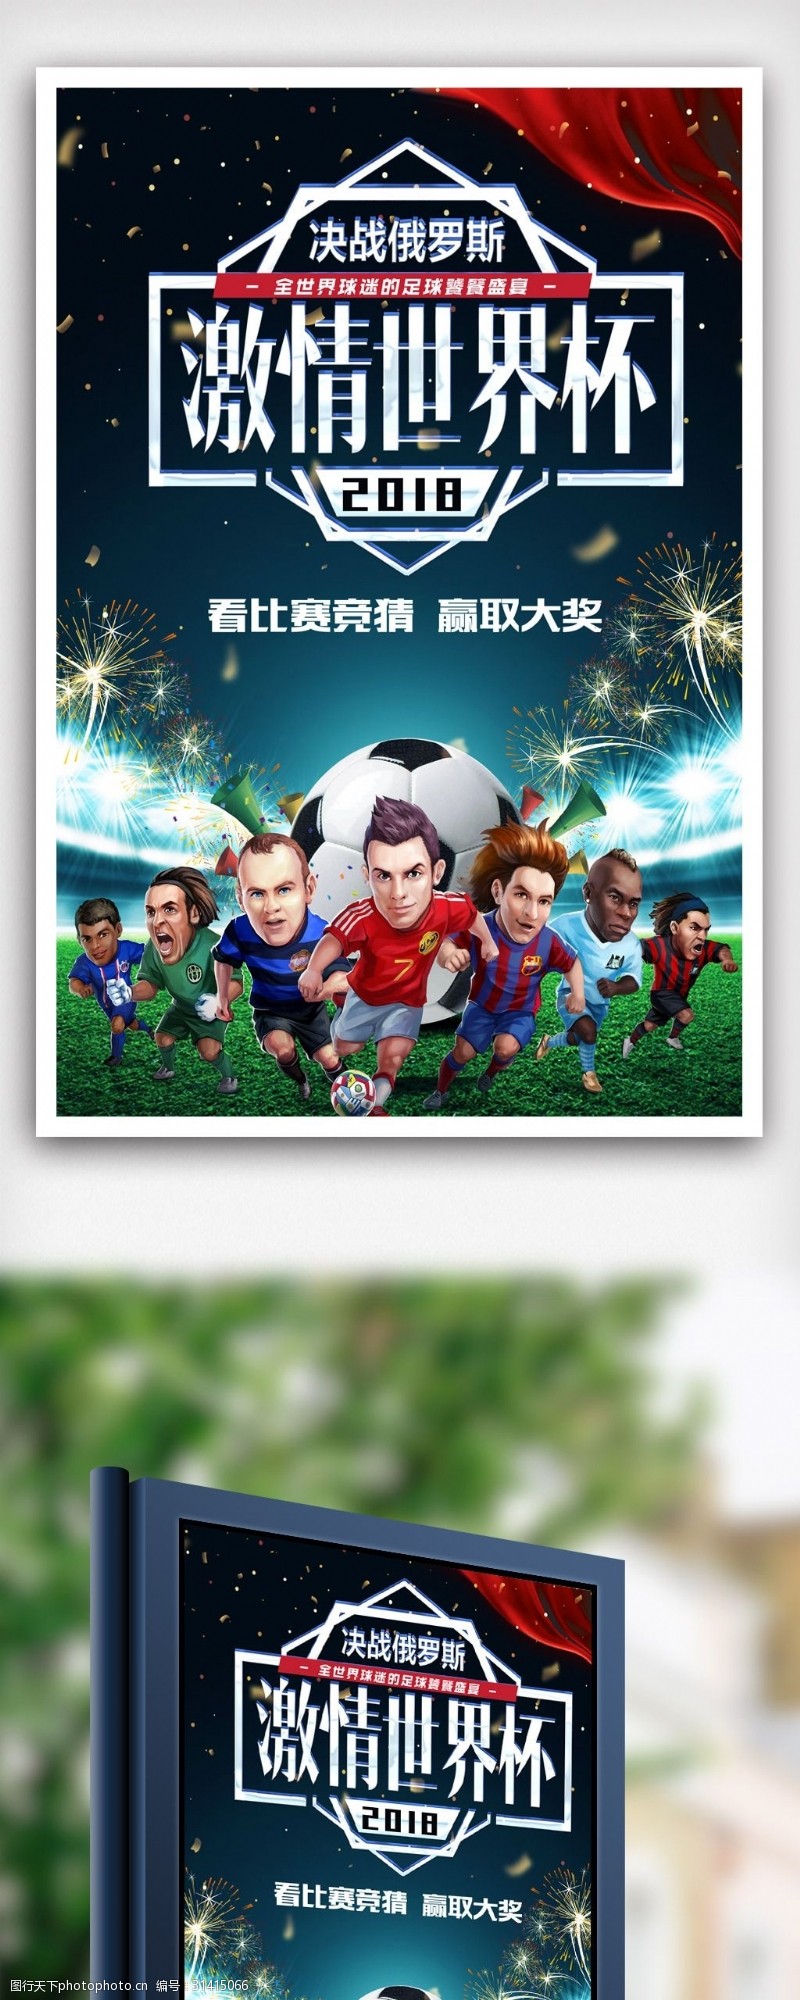 足球主题2018俄罗斯世界杯主题海报.psd